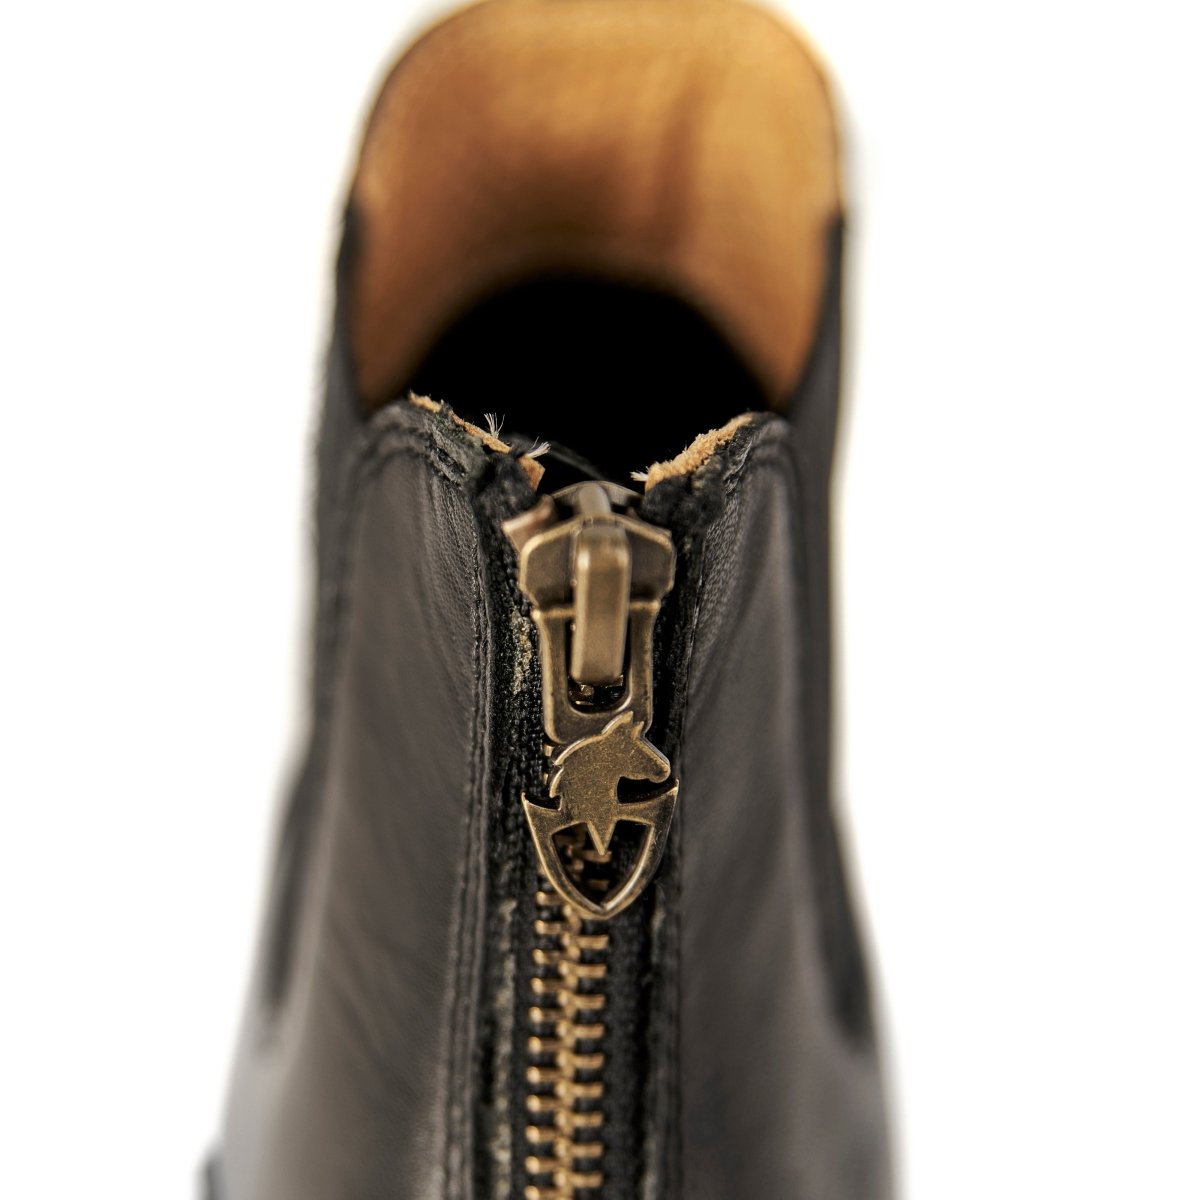 Moretta Materia Boots - Child - Black - 10/28